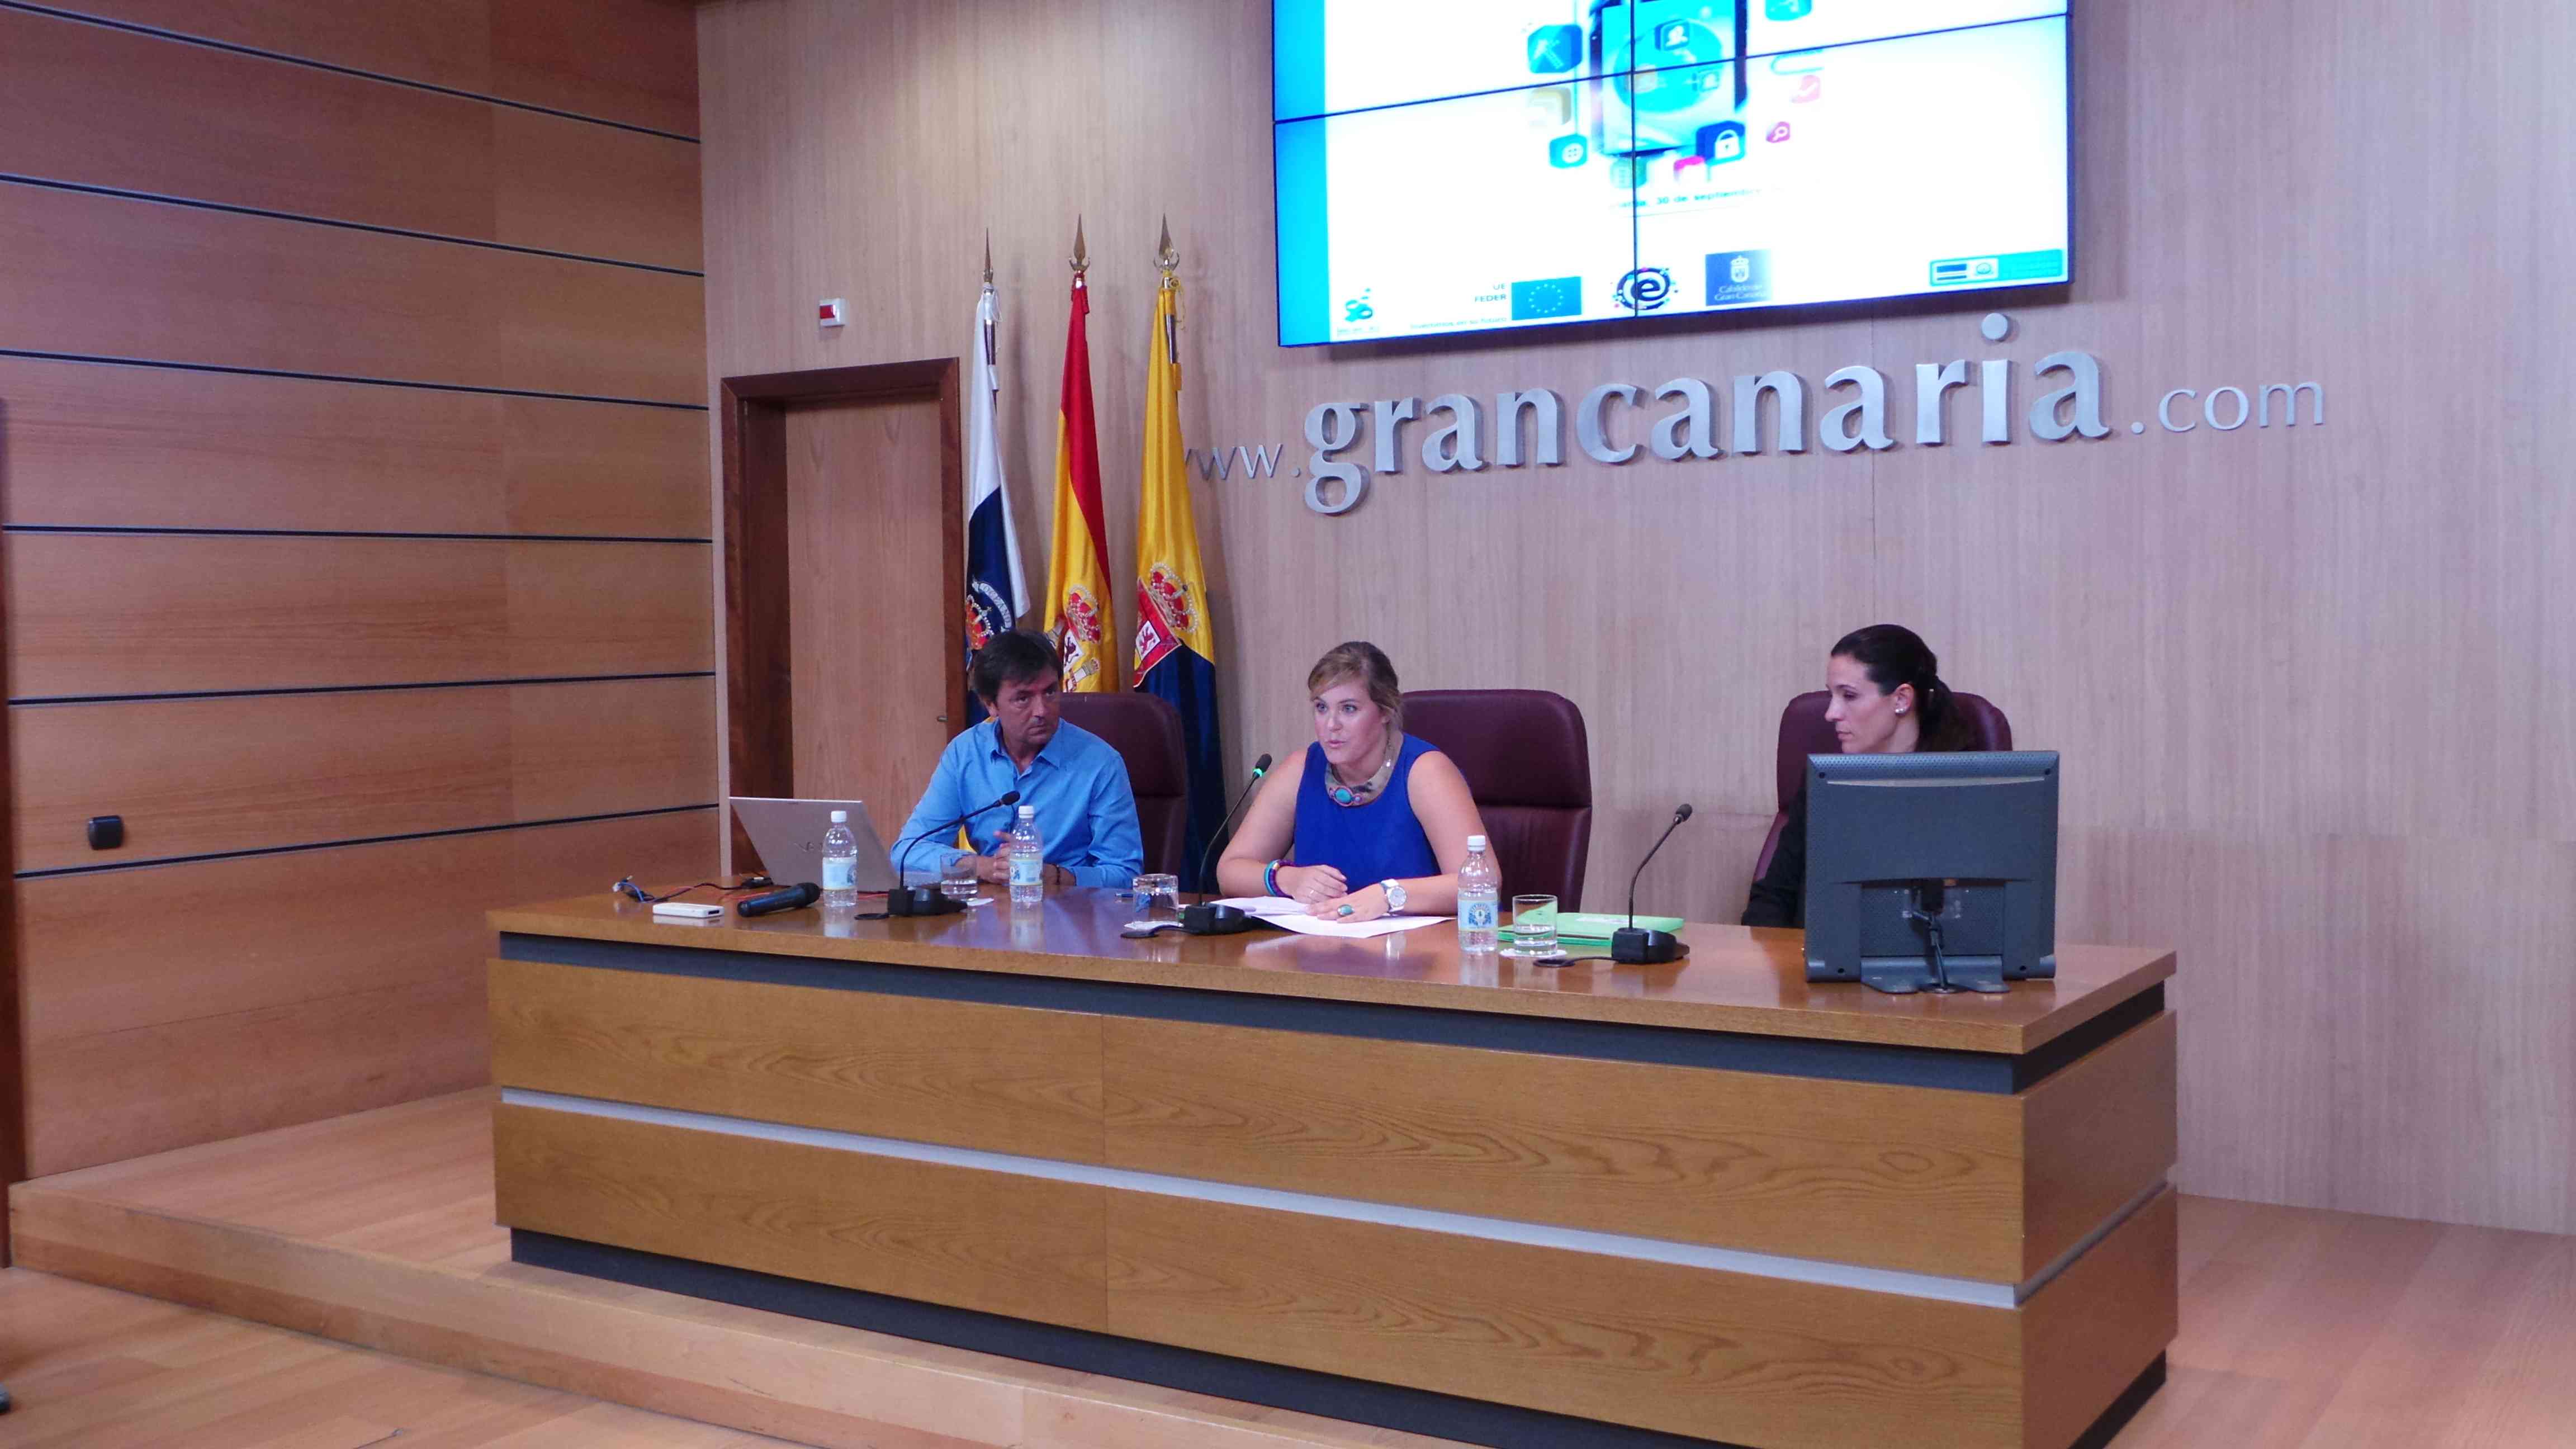 La Consejera de Juventud e Igualdad del Cabildo de Gran Canaria, María del Carmen Muñoz, durante la inauguración